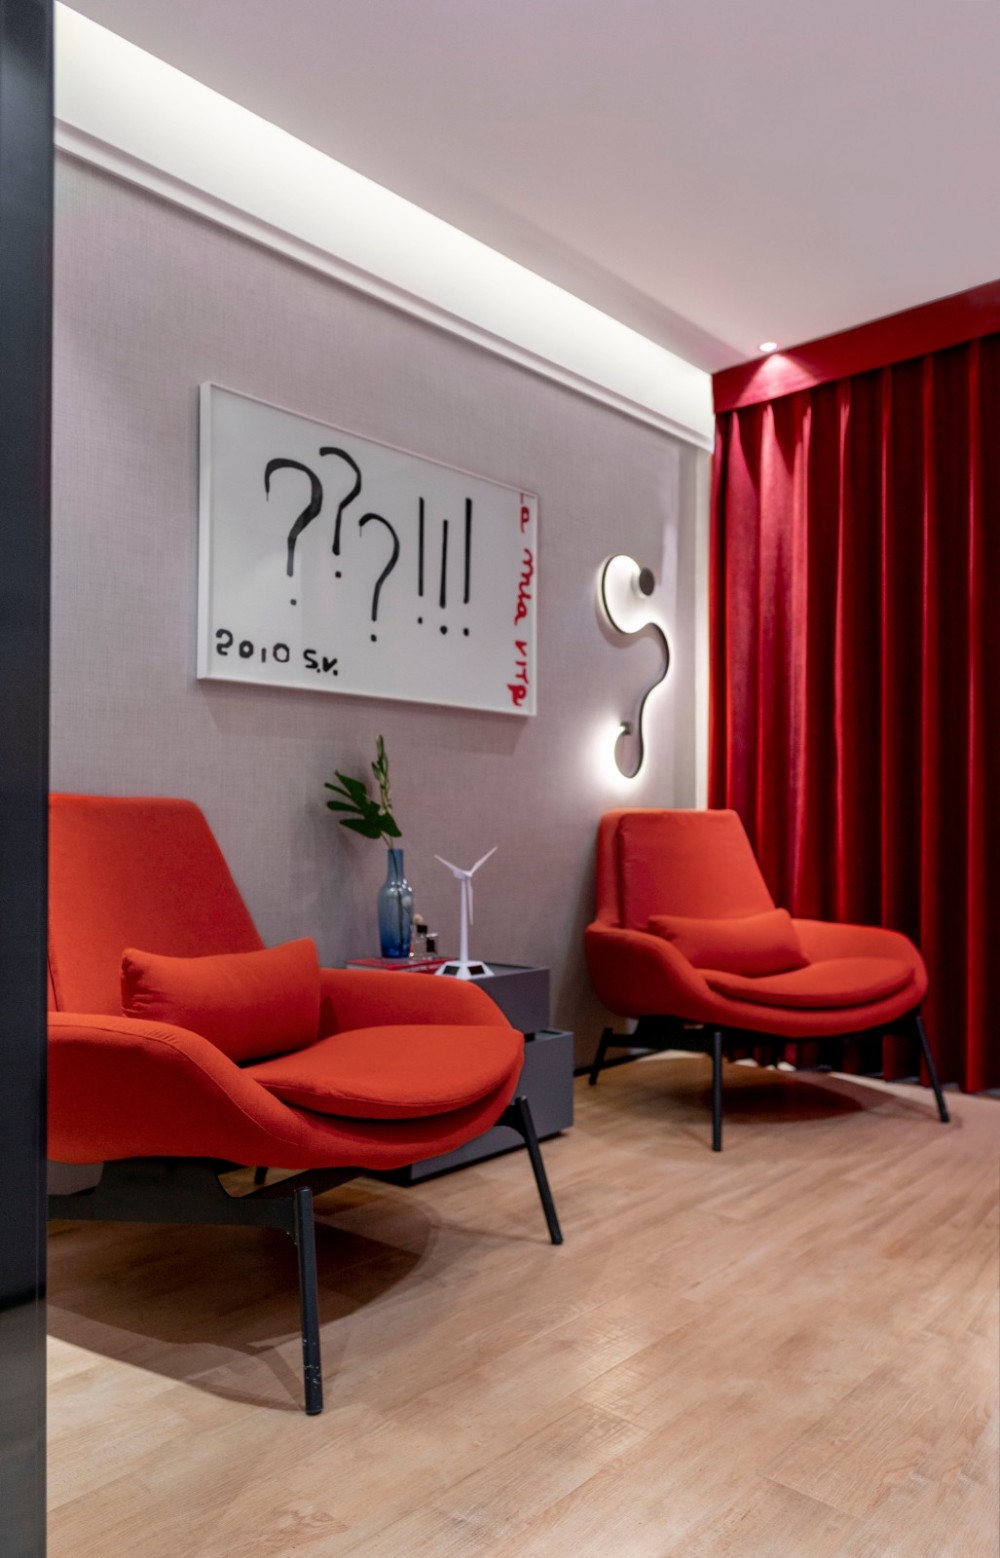 現代簡約風格室內設計家裝案例-臥室